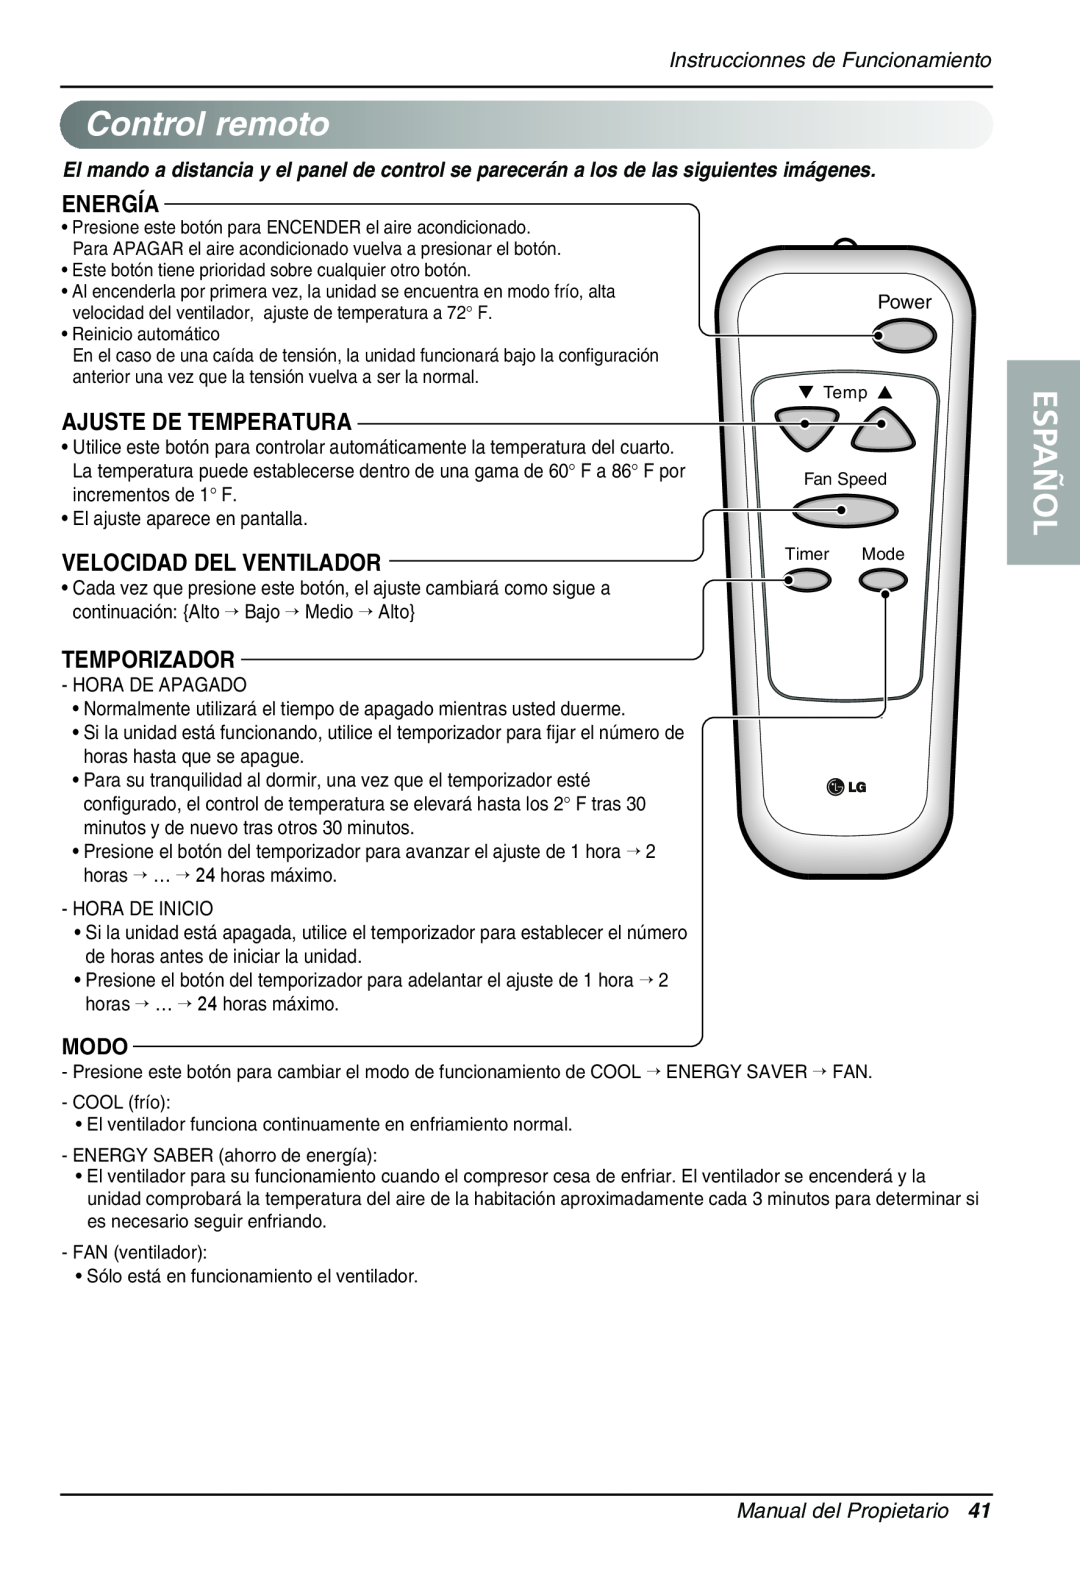 Sears LT143CNR manual Controlremoto, Español, Energía, Ajuste De Temperatura, Velocidad Del Ventilador, Temporizador, Modo 